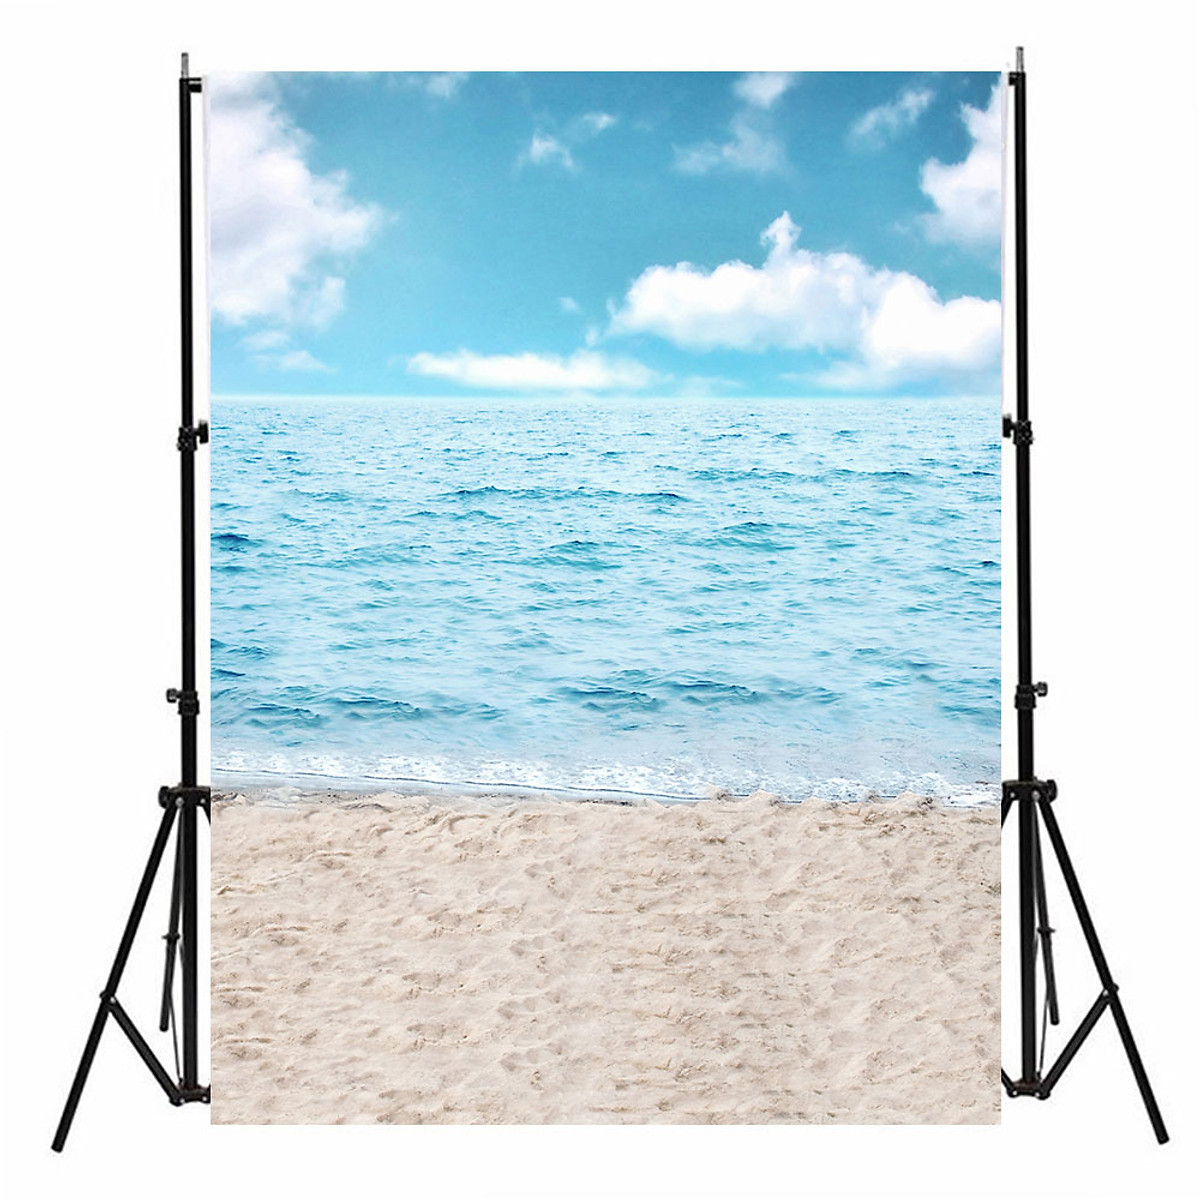 Ai cũng muốn có album ảnh đượm nắng và gió biển, và đó là lý do tại sao Phông Nền Studio Bãi Biển được yêu thích. Không chỉ giúp bạn có những bức ảnh đẹp và tự nhiên, mà nó còn giúp tạo nên cảm giác thoải mái và thư giãn, giống như một chuyến du lịch đến các bãi biển tuyệt đẹp.